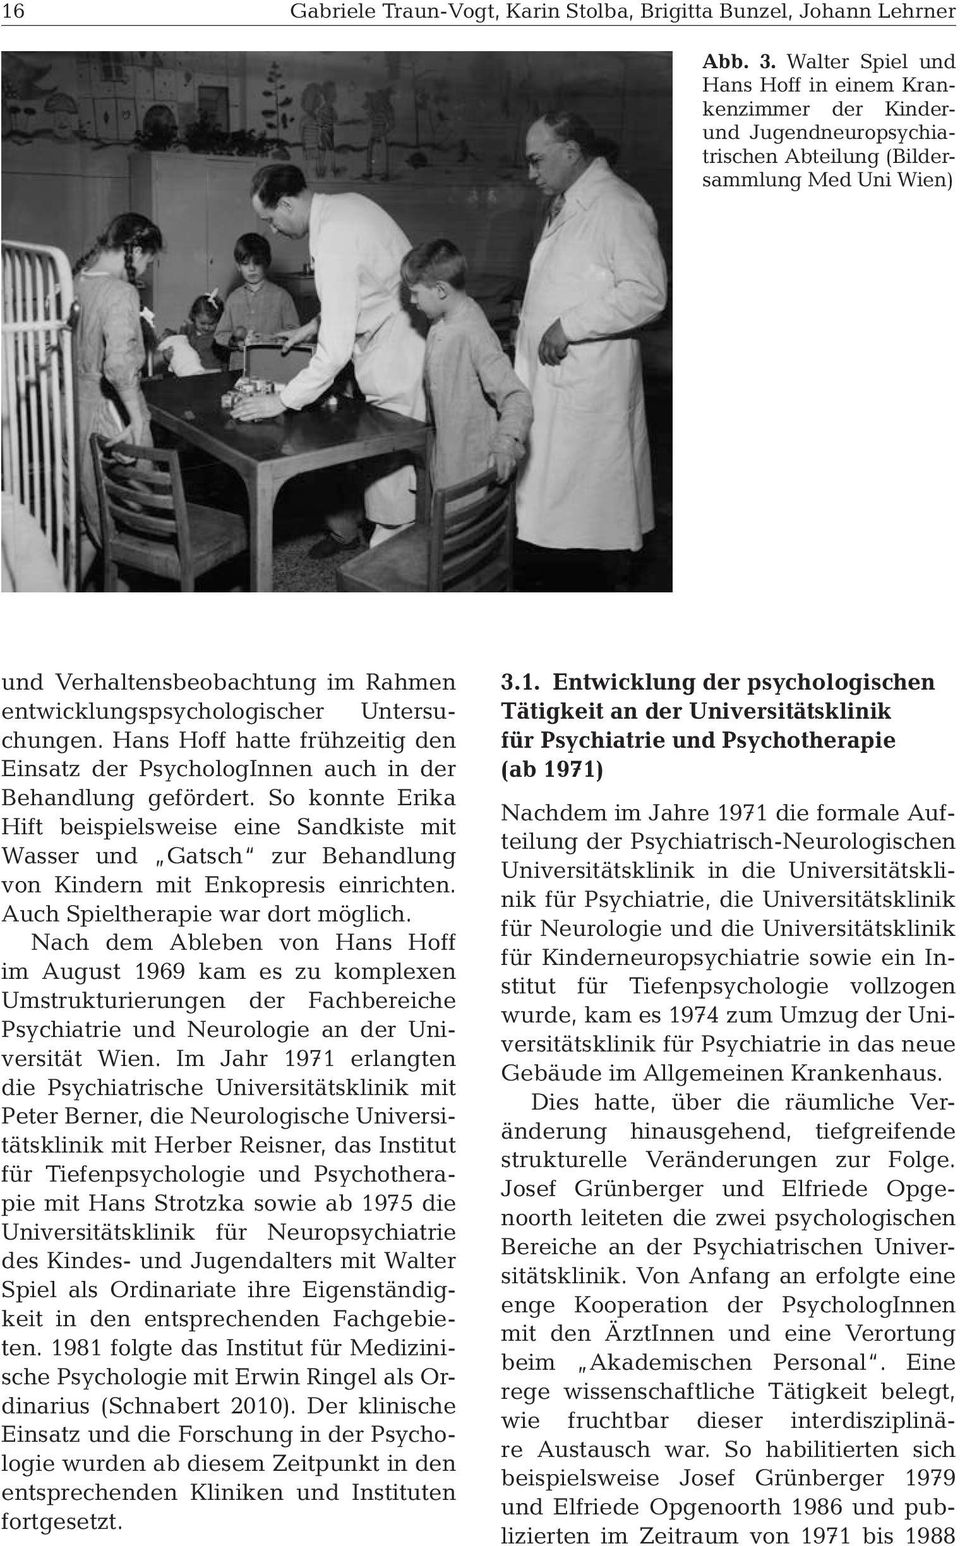 Untersuchungen. Hans Hoff hatte frühzeitig den Einsatz der PsychologInnen auch in der Behandlung gefördert.